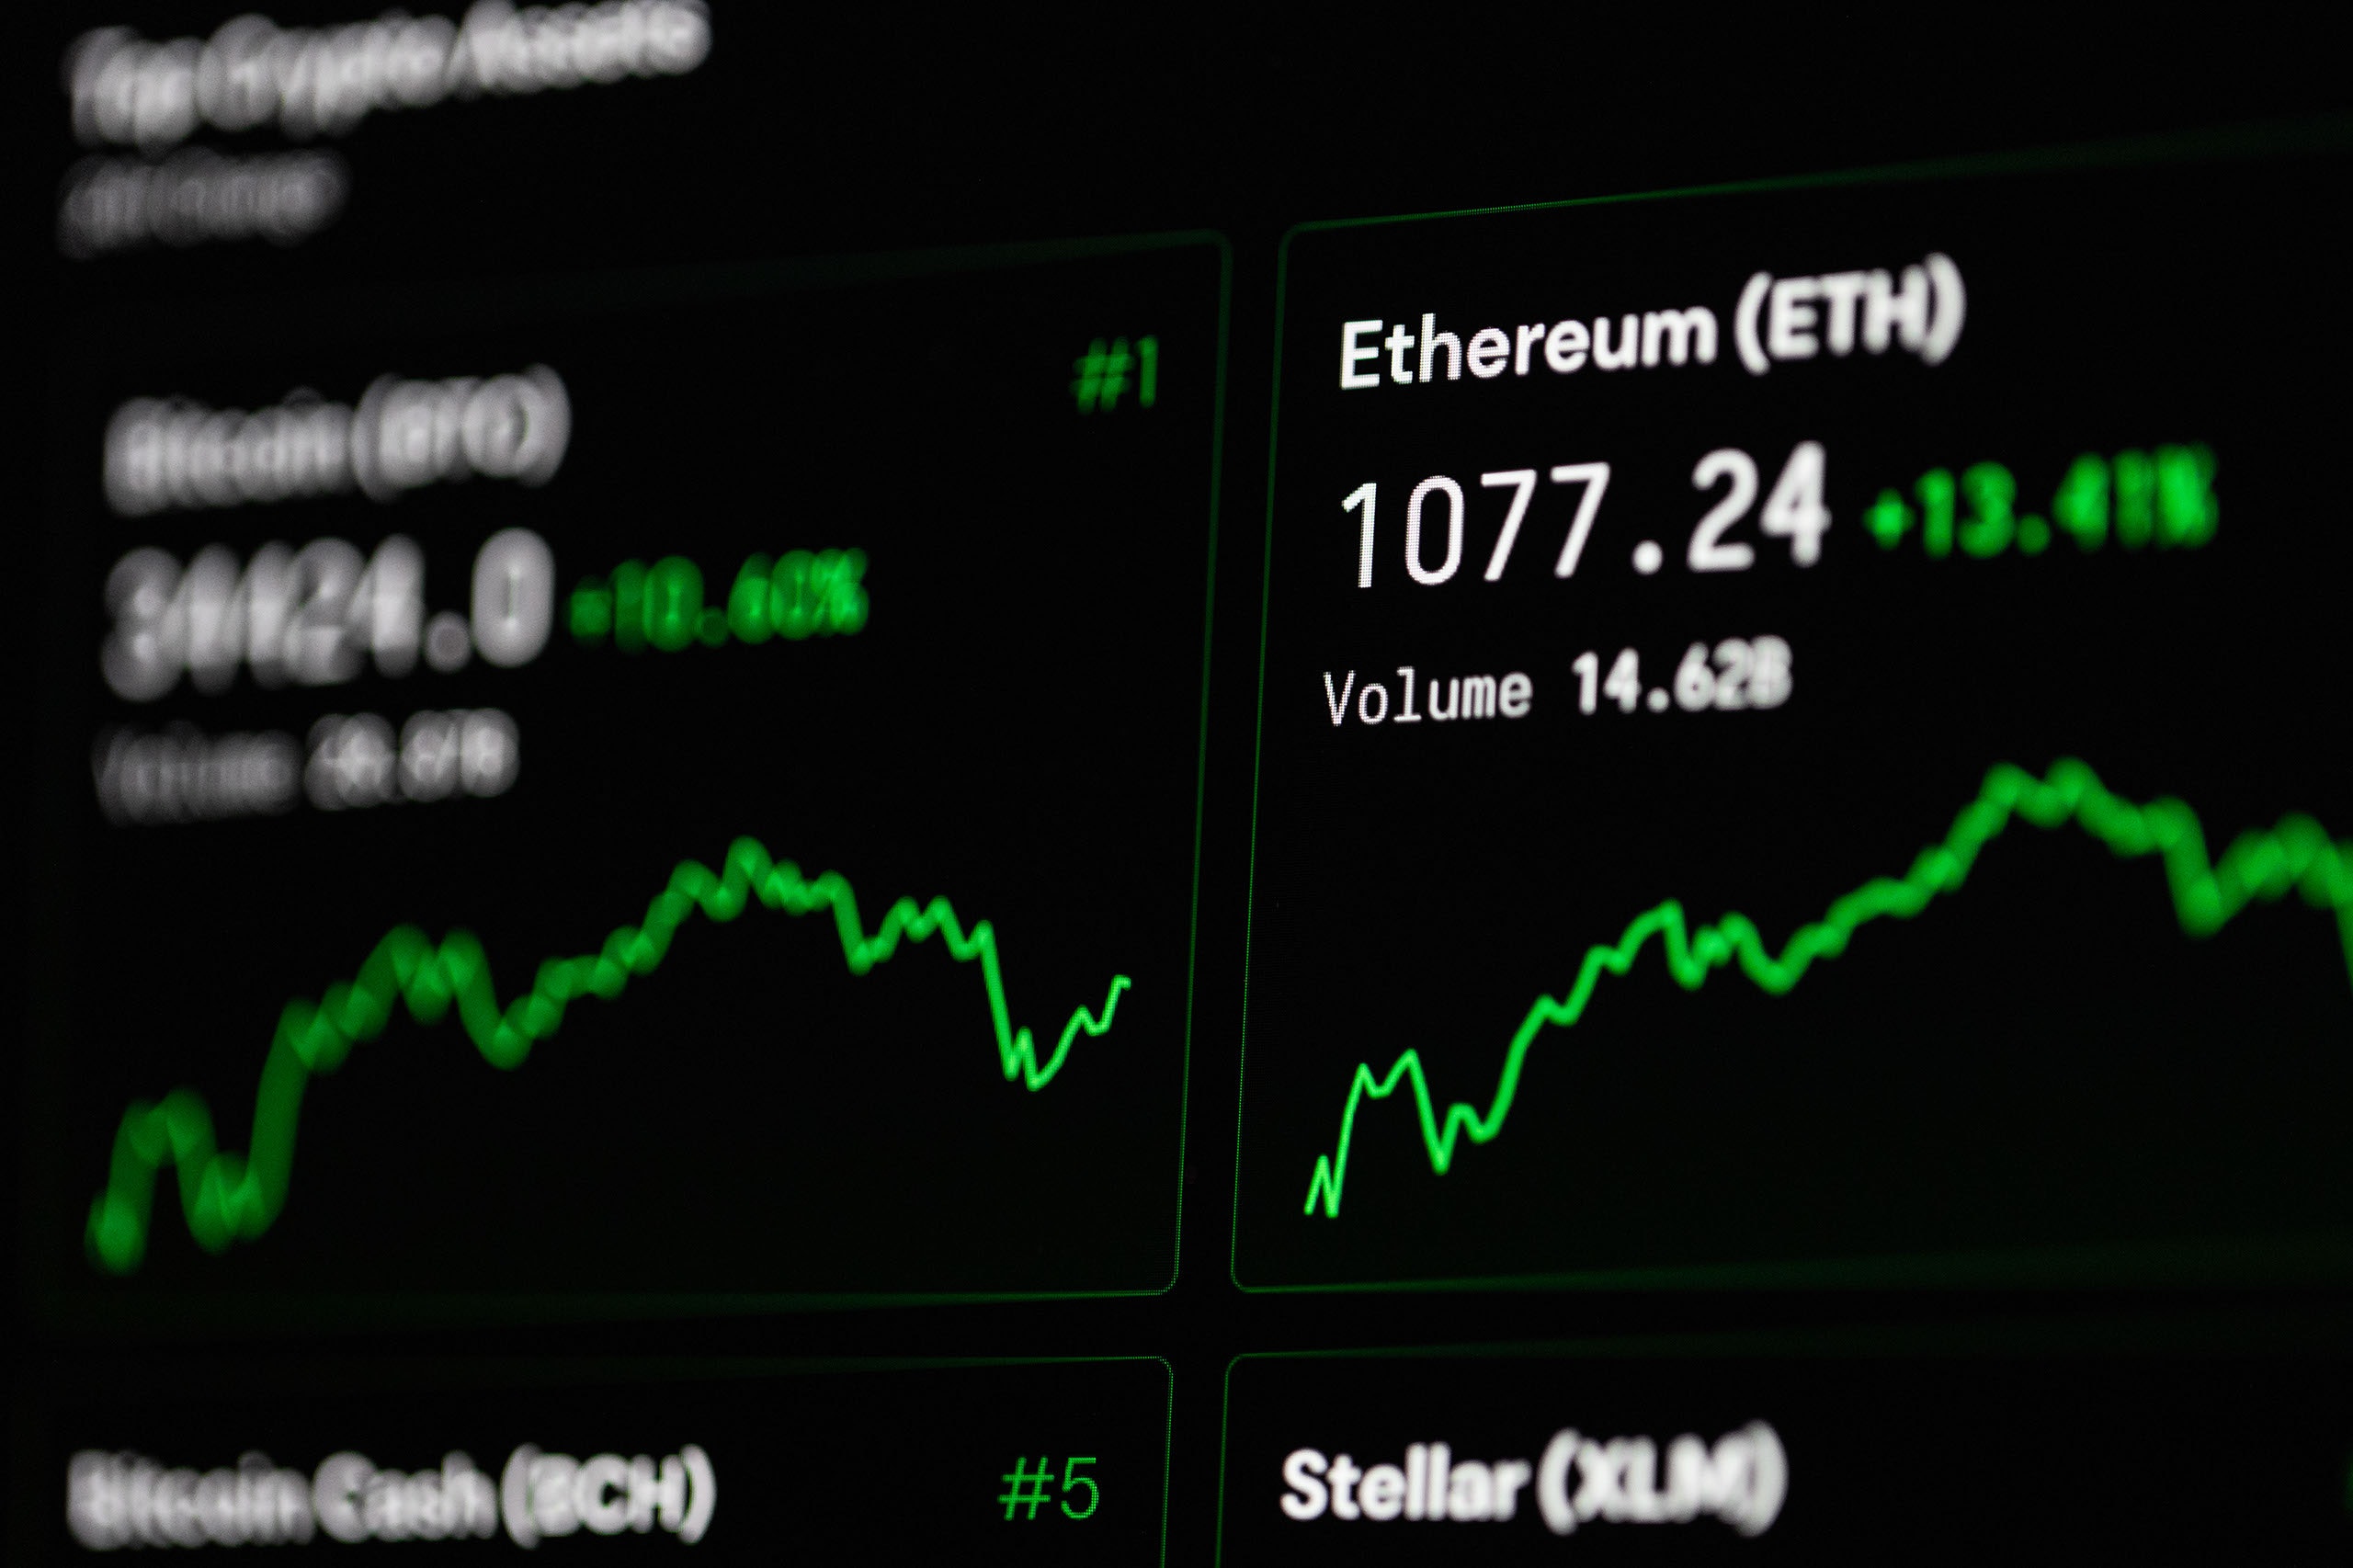 noch in ethereum investieren wo ist der bitcoin in 10 jahren?